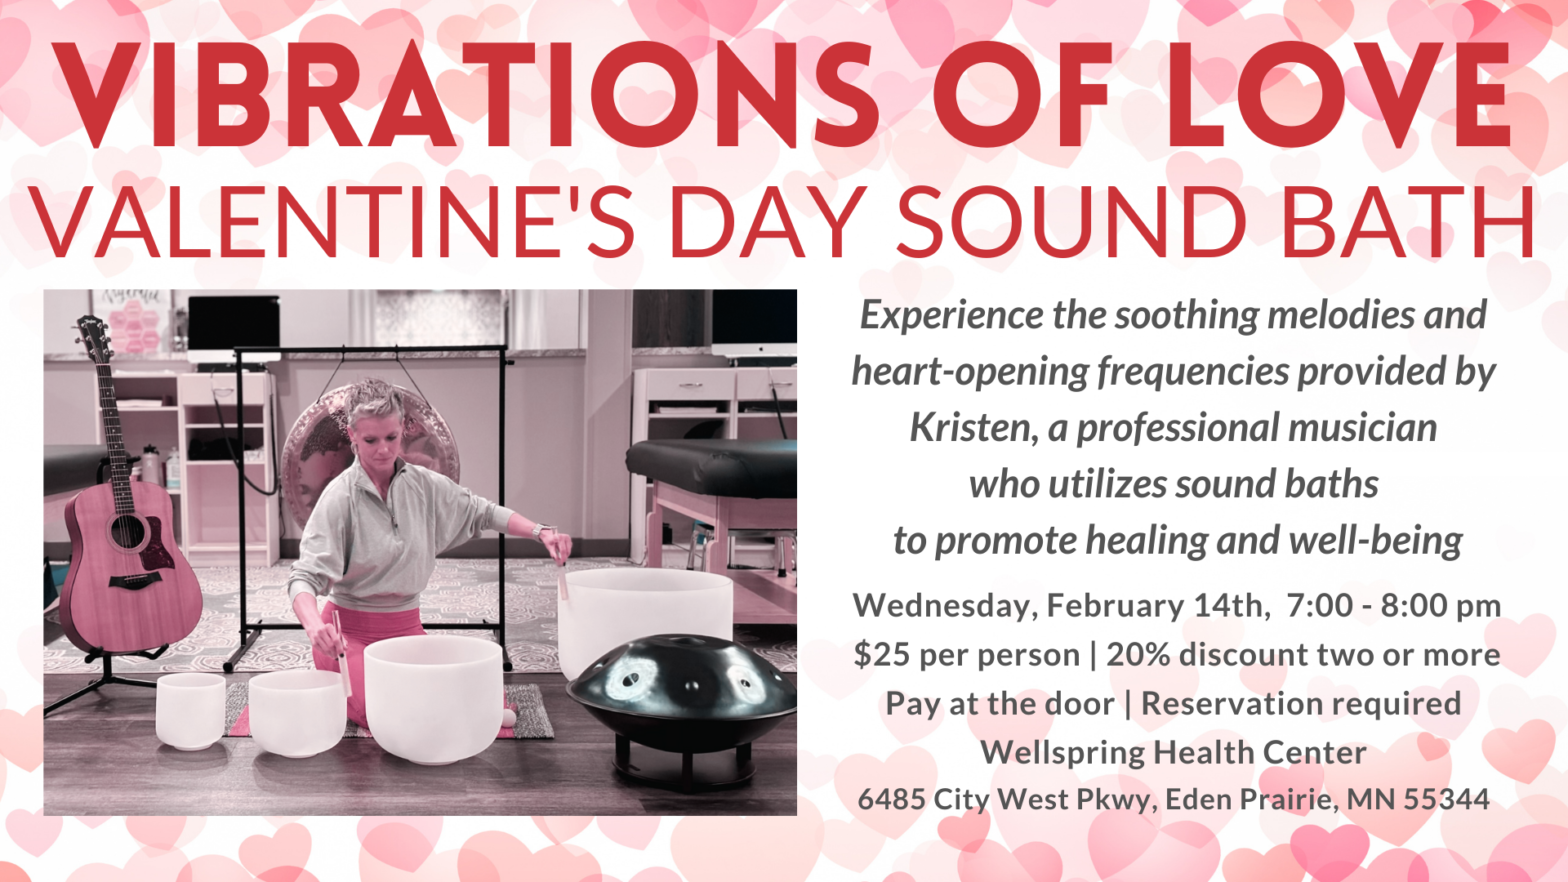 Sound Bath for Valentine's Day